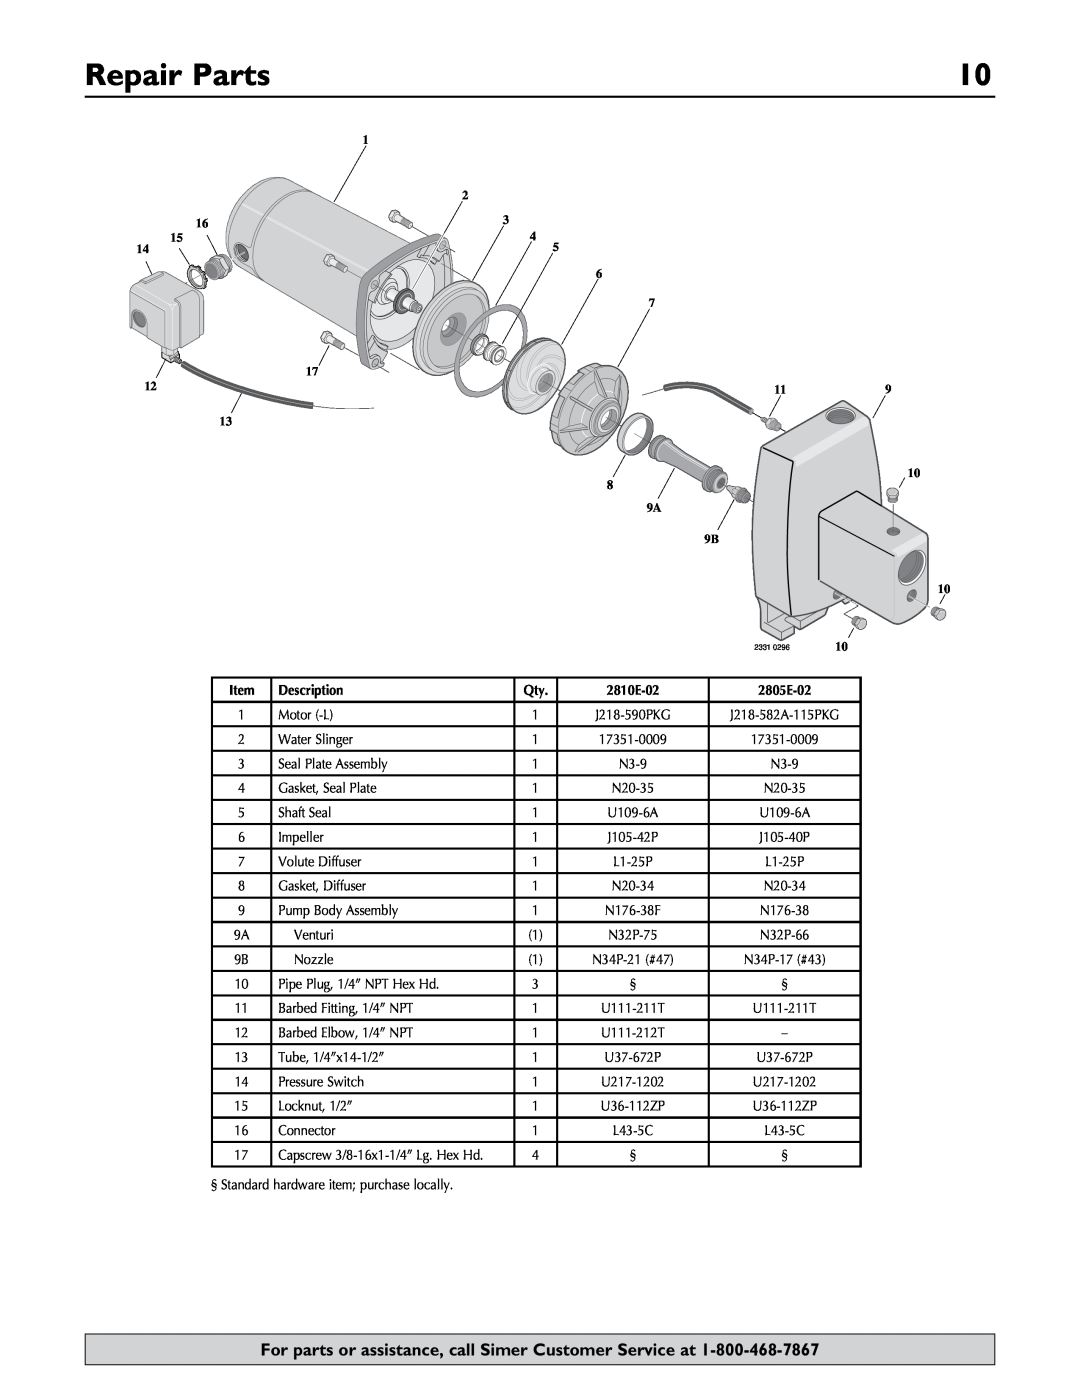 Simer Pumps 2.81E+01 owner manual Repair Parts, Description 